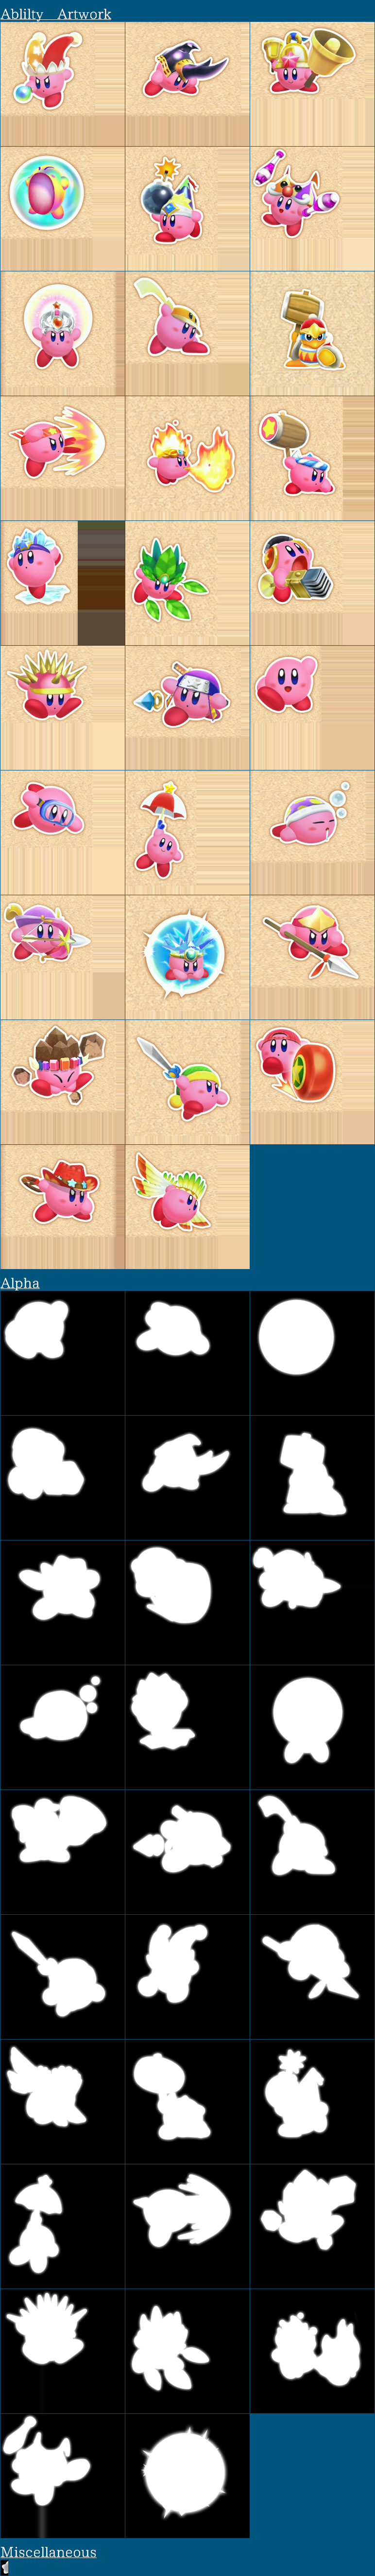 Kirby: Triple Deluxe - Pause Menu Artwork